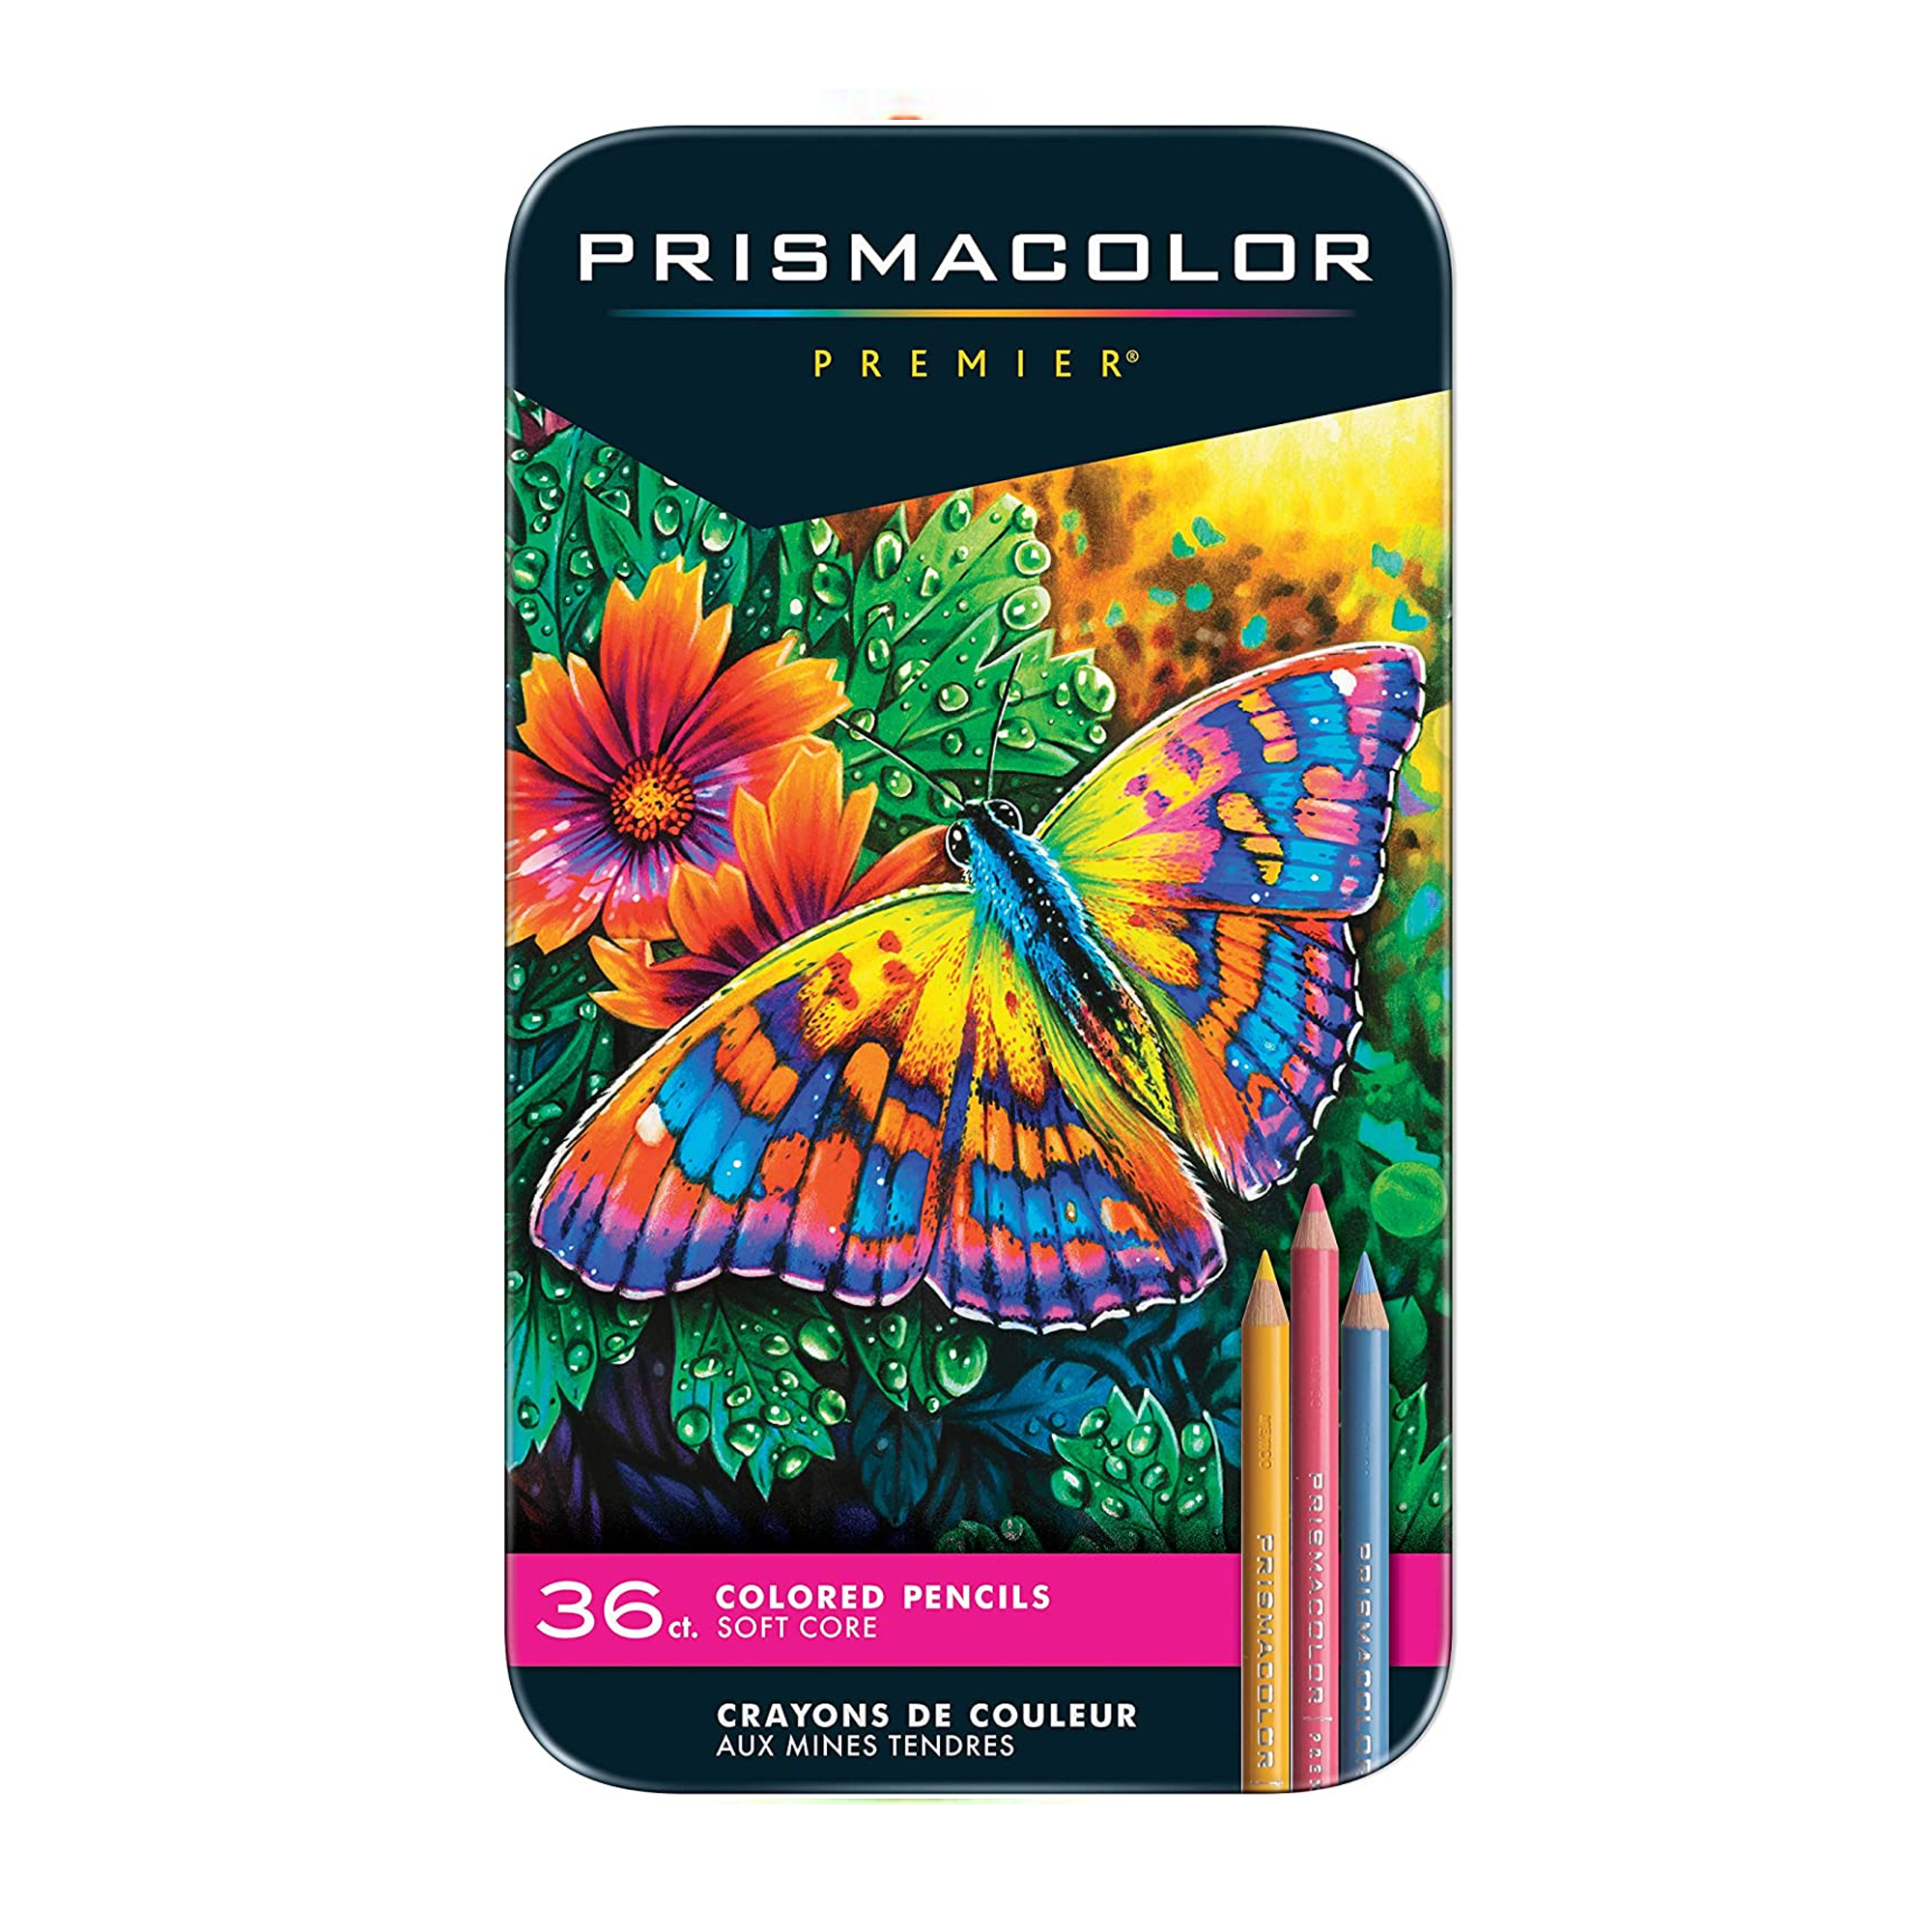 Colores Prismacolor premier con 36 pieza Lápiz de  color prismacolor profesional (premier) estuche c/36 colores diferentes, máxima suavidad al escribir, la cera que contiene el producto lo hace sumamente suave, ideal para los dibujantes, artistas, diseñadores, etc                                 s                                        - 1935025